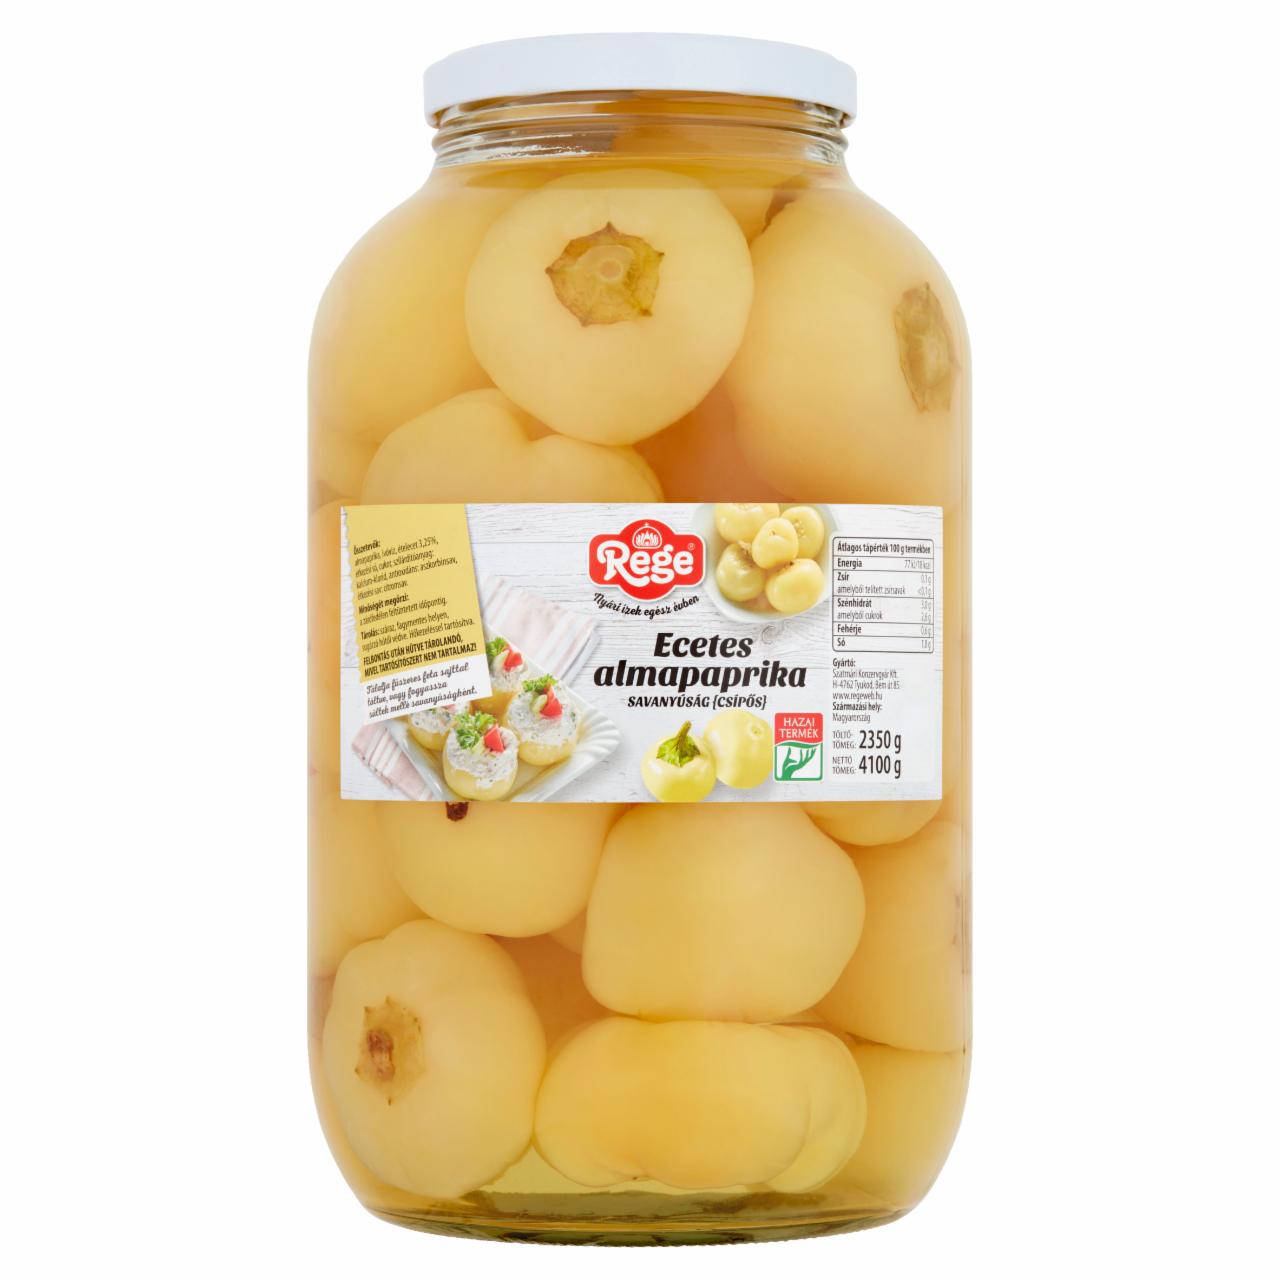 Képek - Rege csípős ecetes almapaprika savanyúság 4100 g